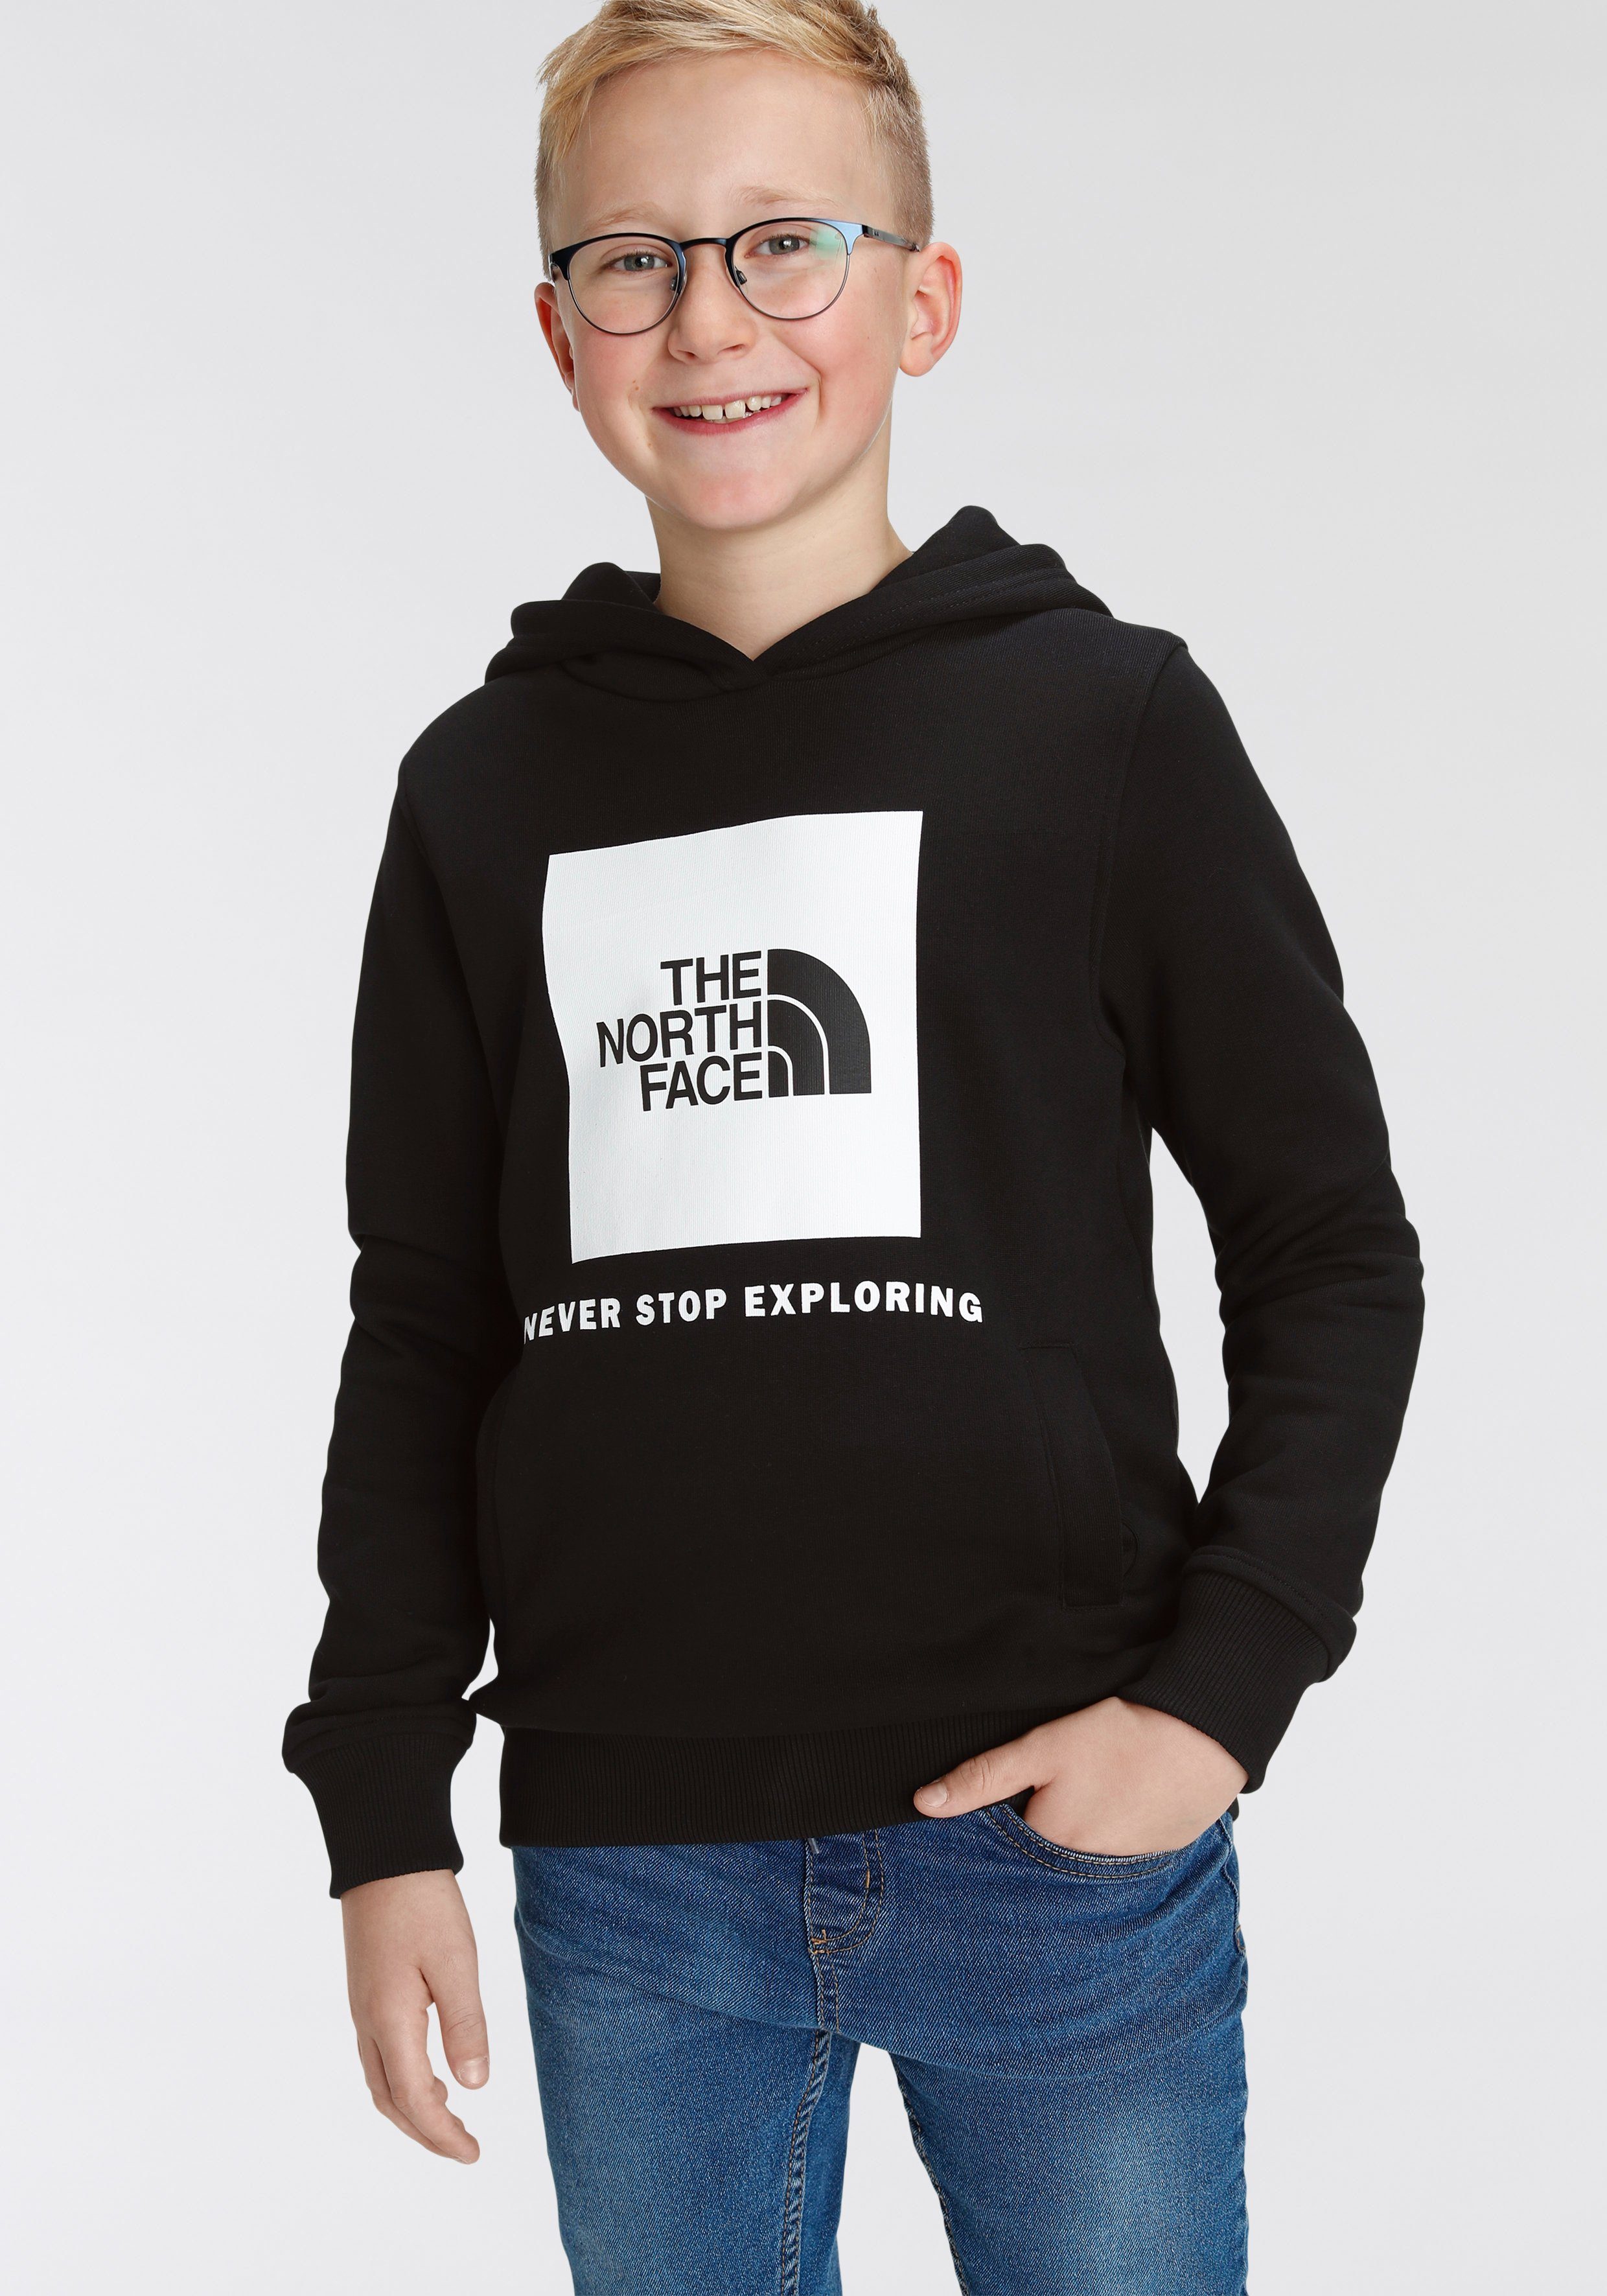 Kapuzensweatshirt für BOX schwarz TEENS Kinder Face The North